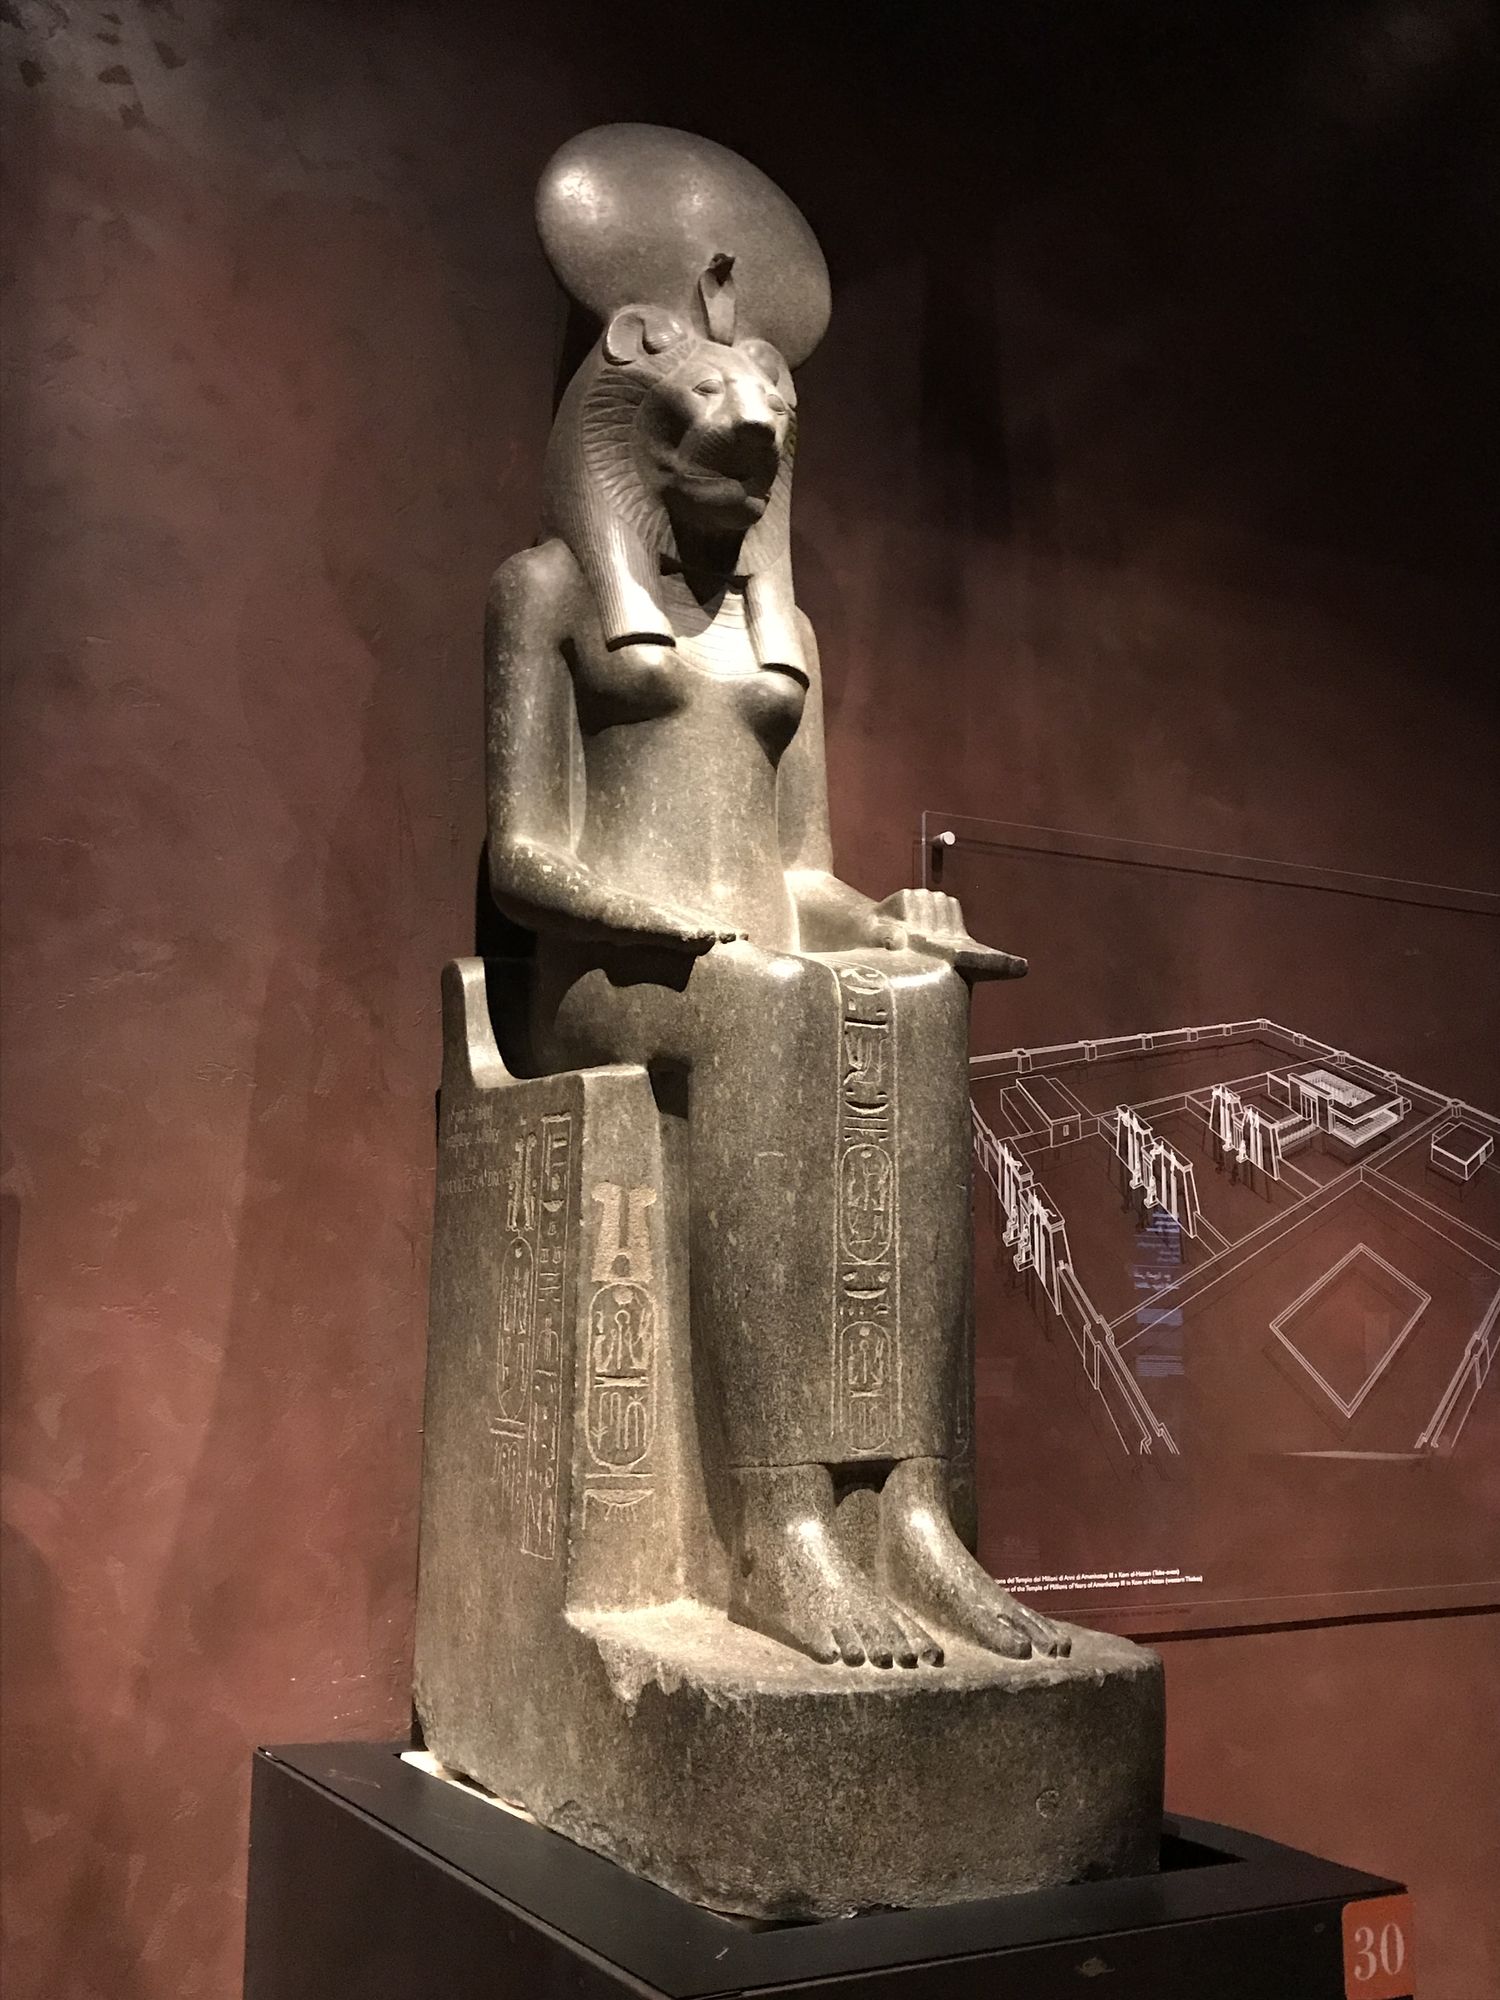 Antiguo Egipto - Museo de Turín - Egiptología